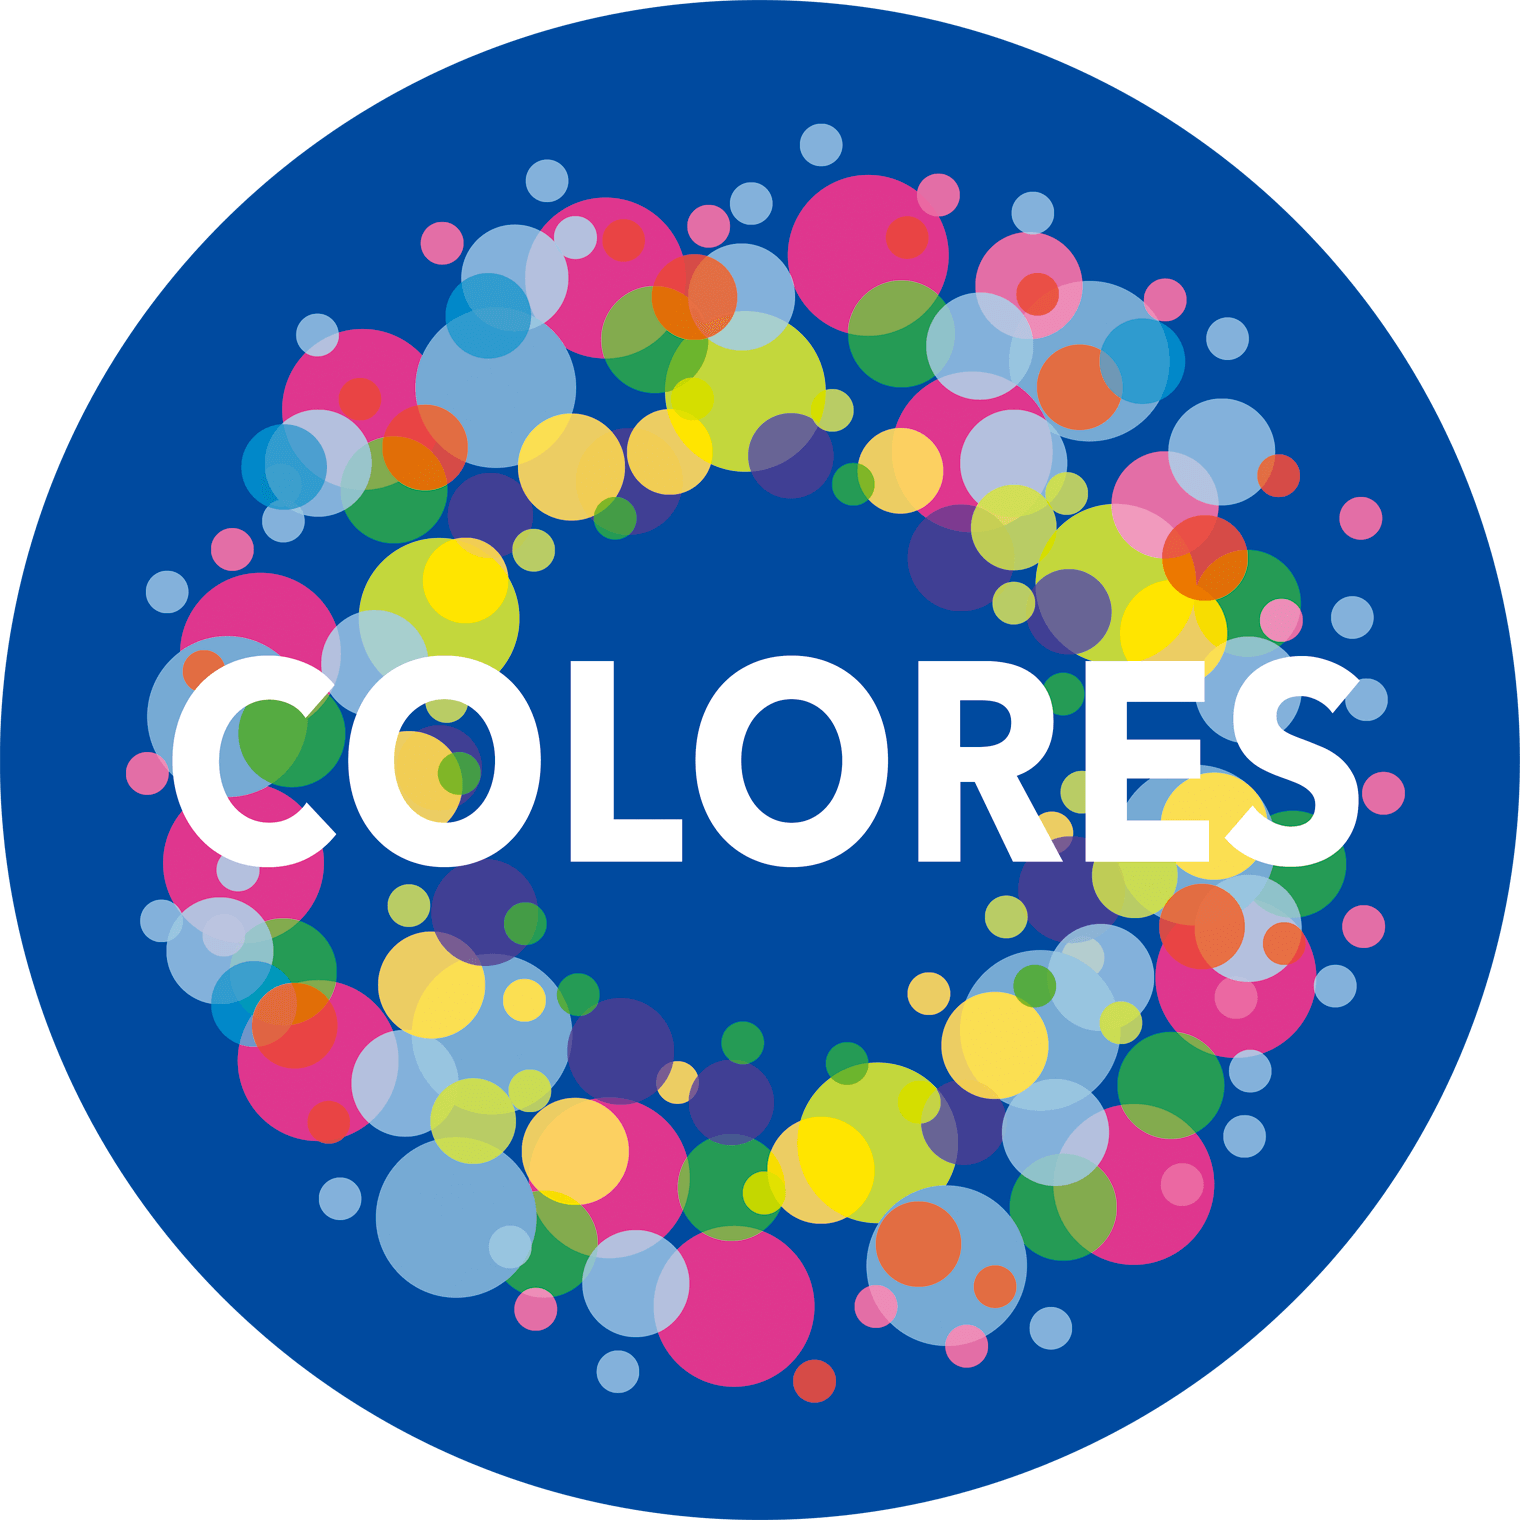 COLORES オフィシャルサイト その色をより鮮やかに、生き生きと